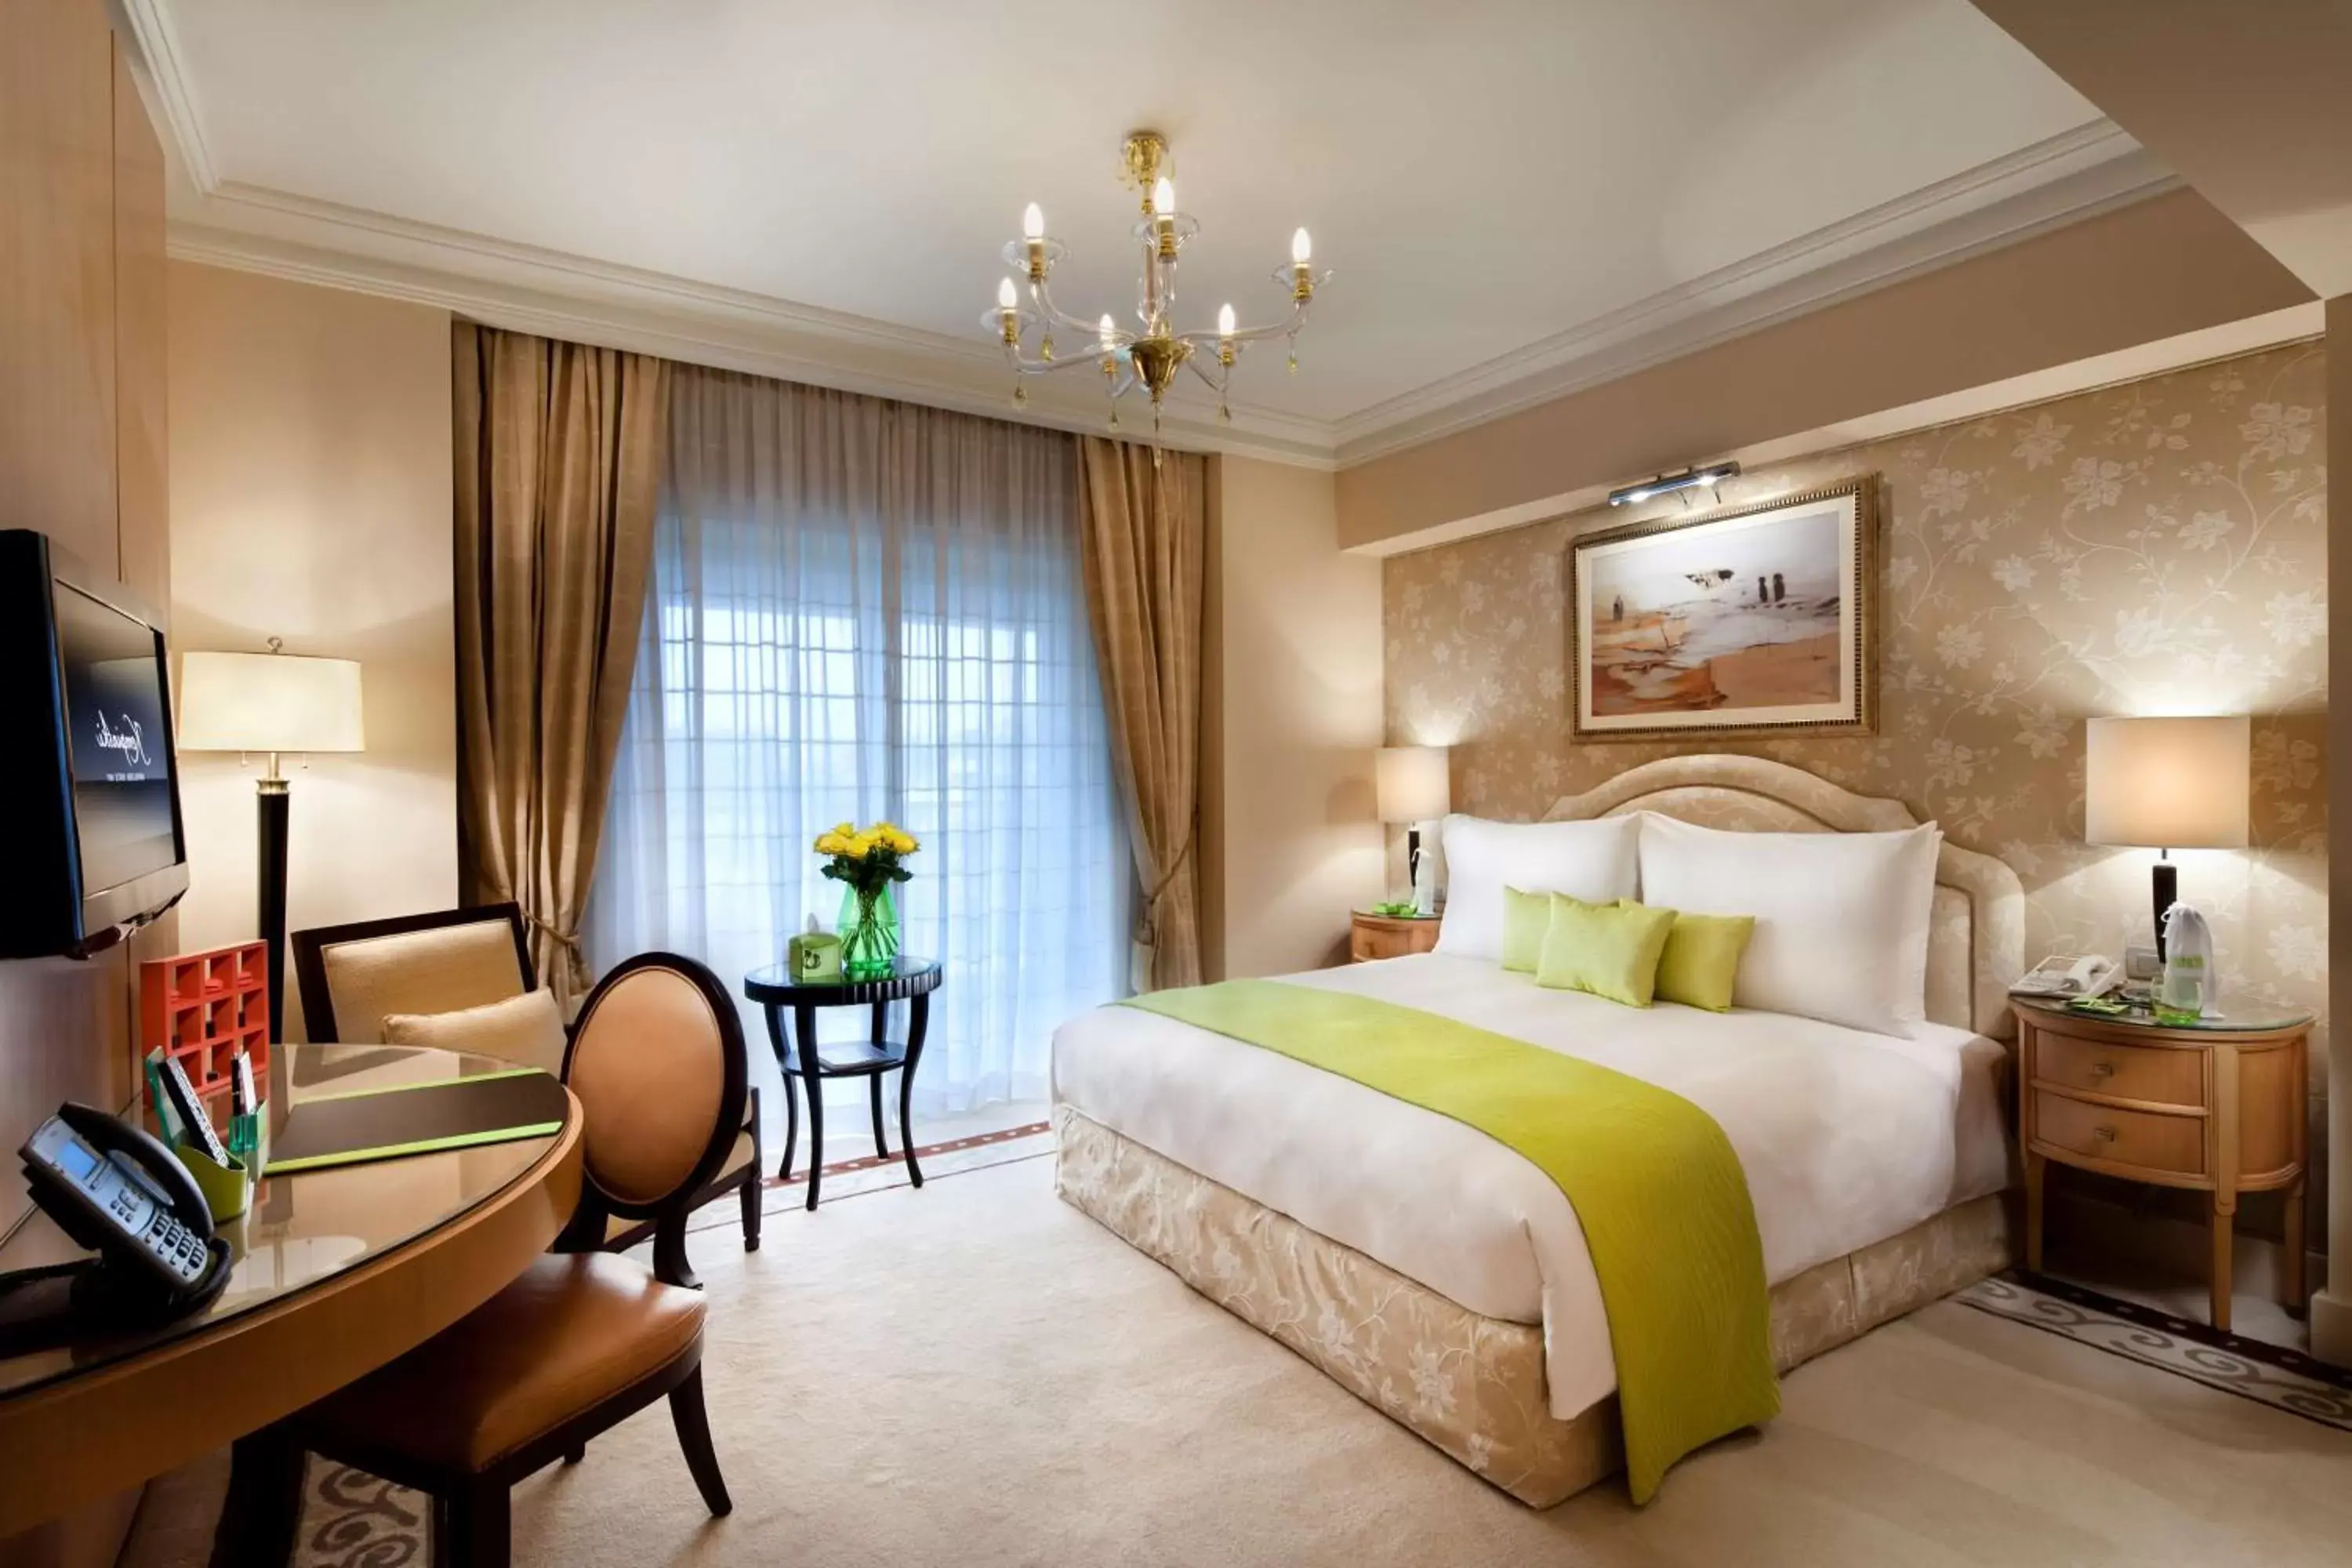 Bedroom in Kempinski Nile Hotel, Cairo